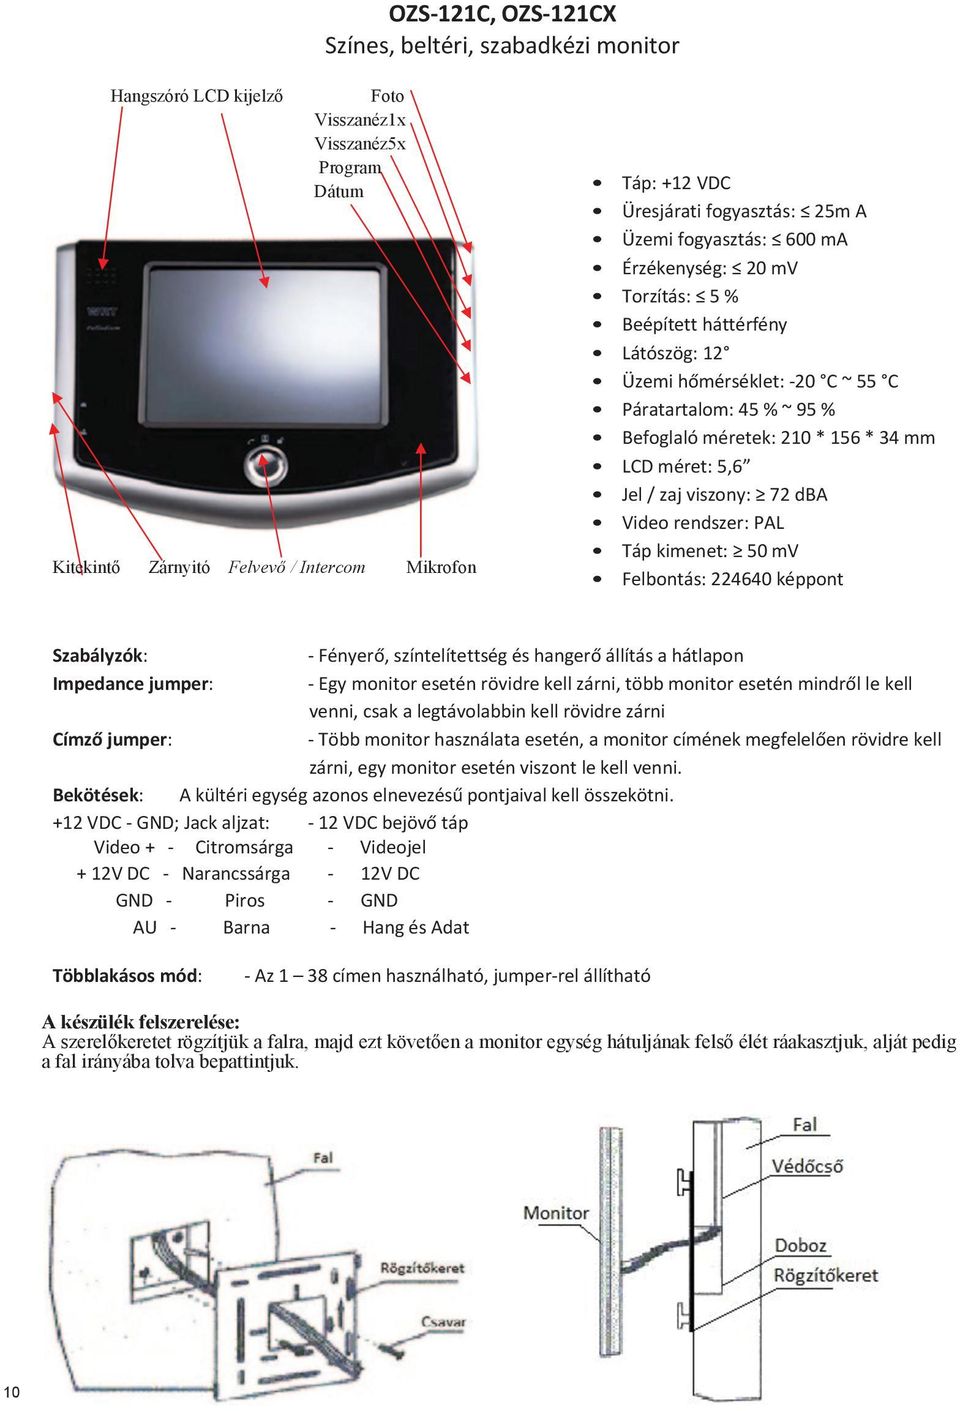 34 mm LCD méret: 5,6 Jel / zaj viszony: 72 dba Táp kimenet: 50 mv Felbontás: 224640 képpont - Fényerő, színtelítettség és hangerő állítás a hátlapon Impedance jumper: - Egy monitor esetén rövidre